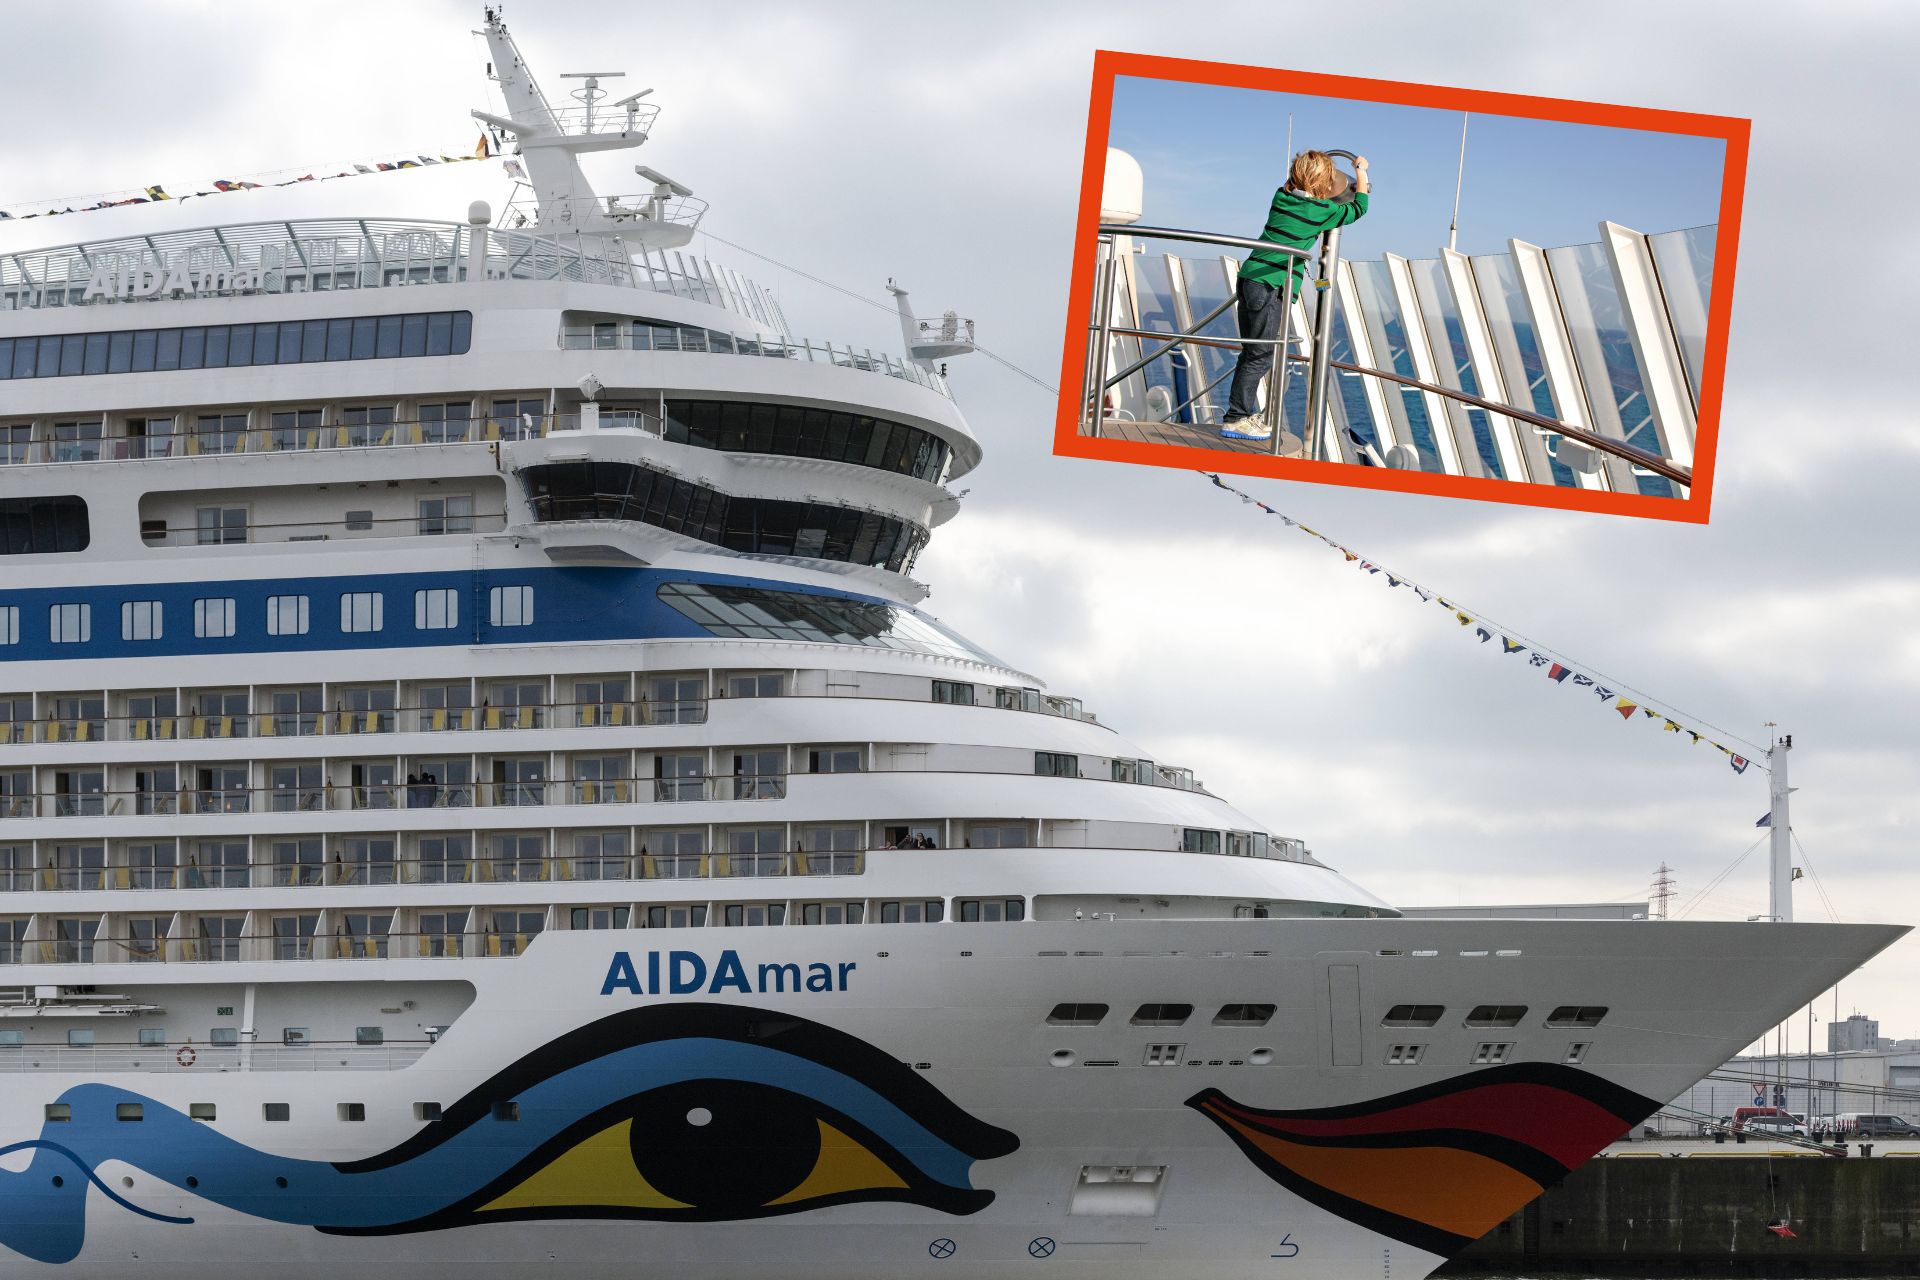 Aida: Familie macht Kreuzfahrt mit Kindern und ist enttäuscht - "Fürchterlich"